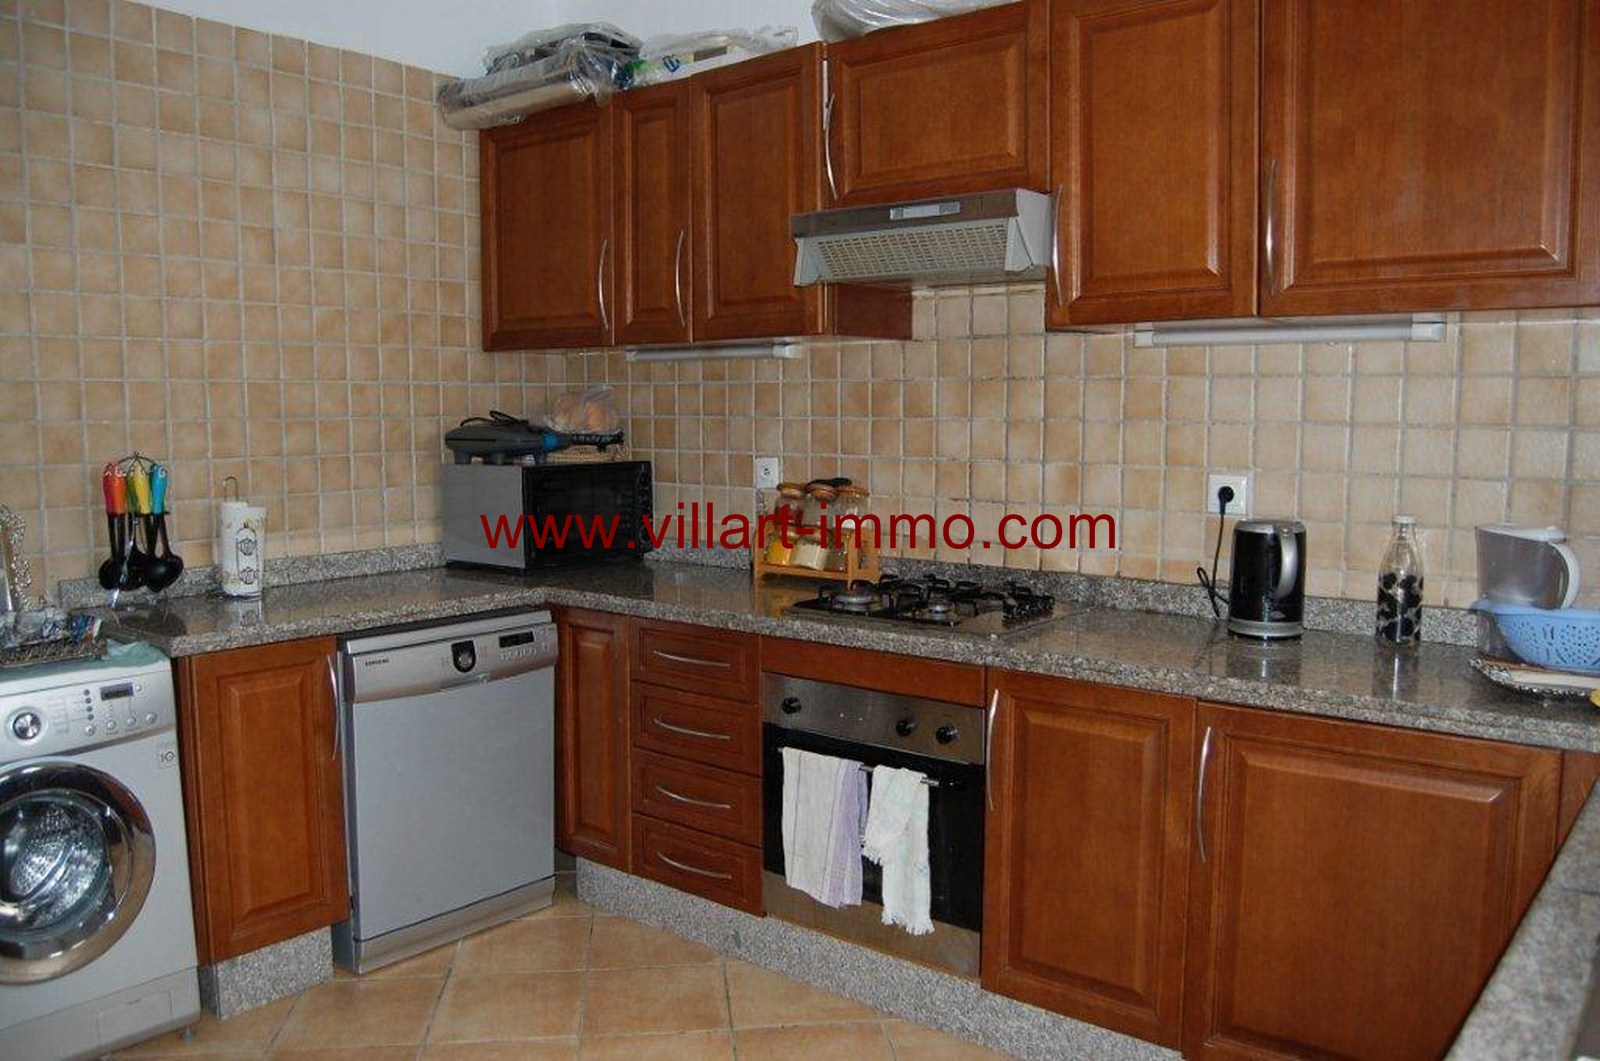 7-For-Sale-Villa-Tangier-Malabata-Kitchen-VV354-Villart Immo